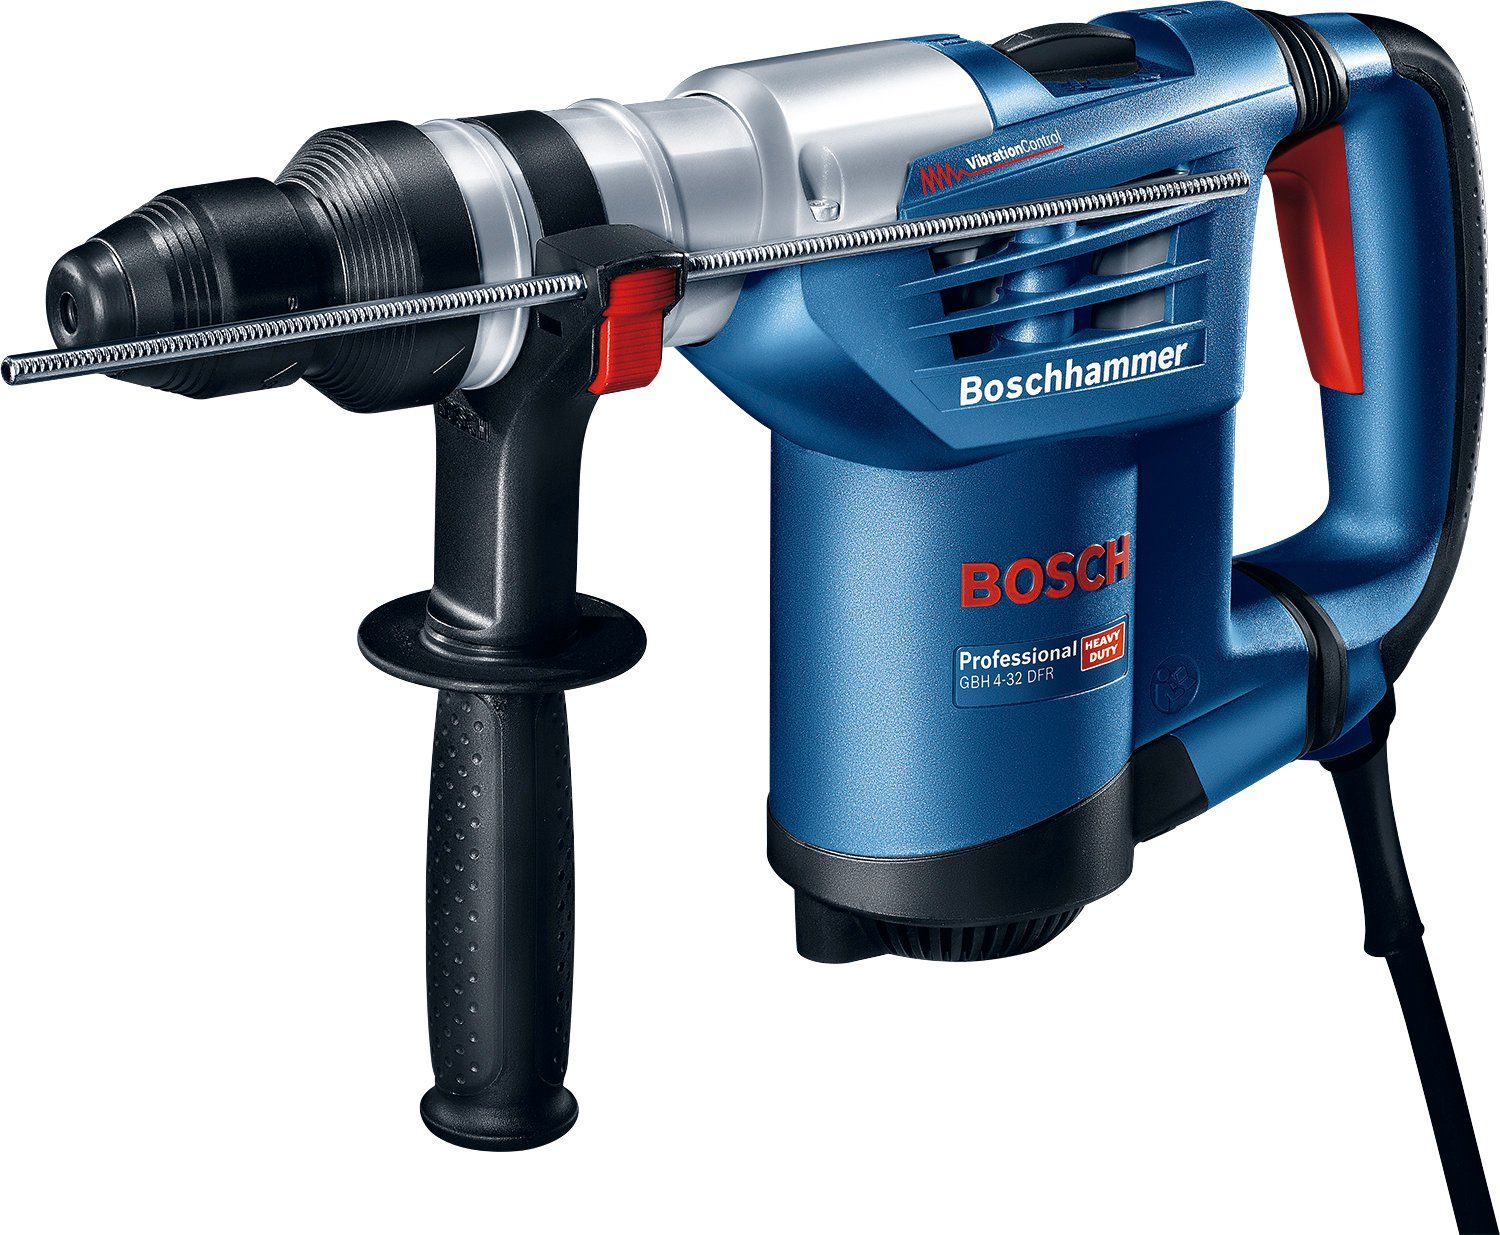 mit Professional 4-32 Bosch 3600 Bohrhammer GBH Handwerkkoffer Schnellspannbohrfutter, U/min, max. DFR,